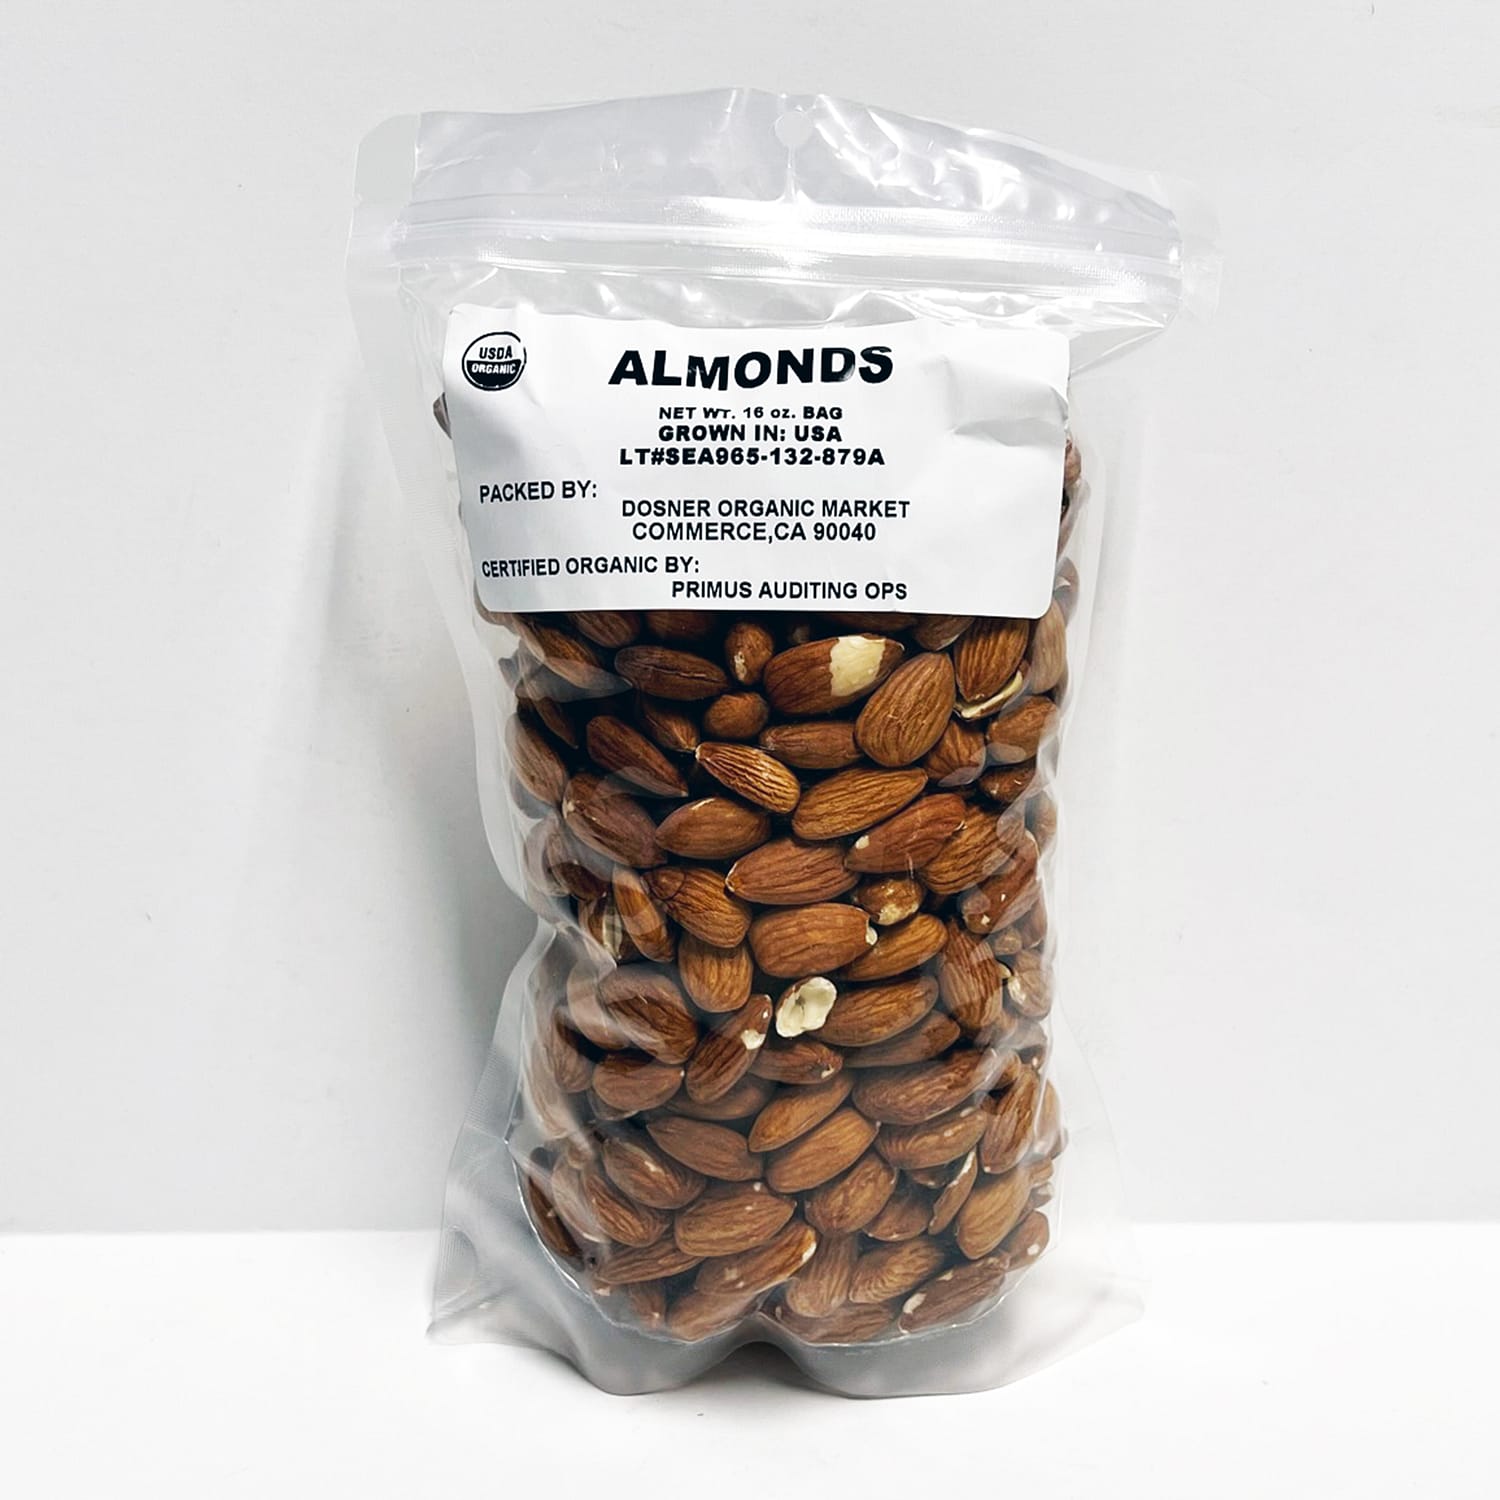 organic almonds